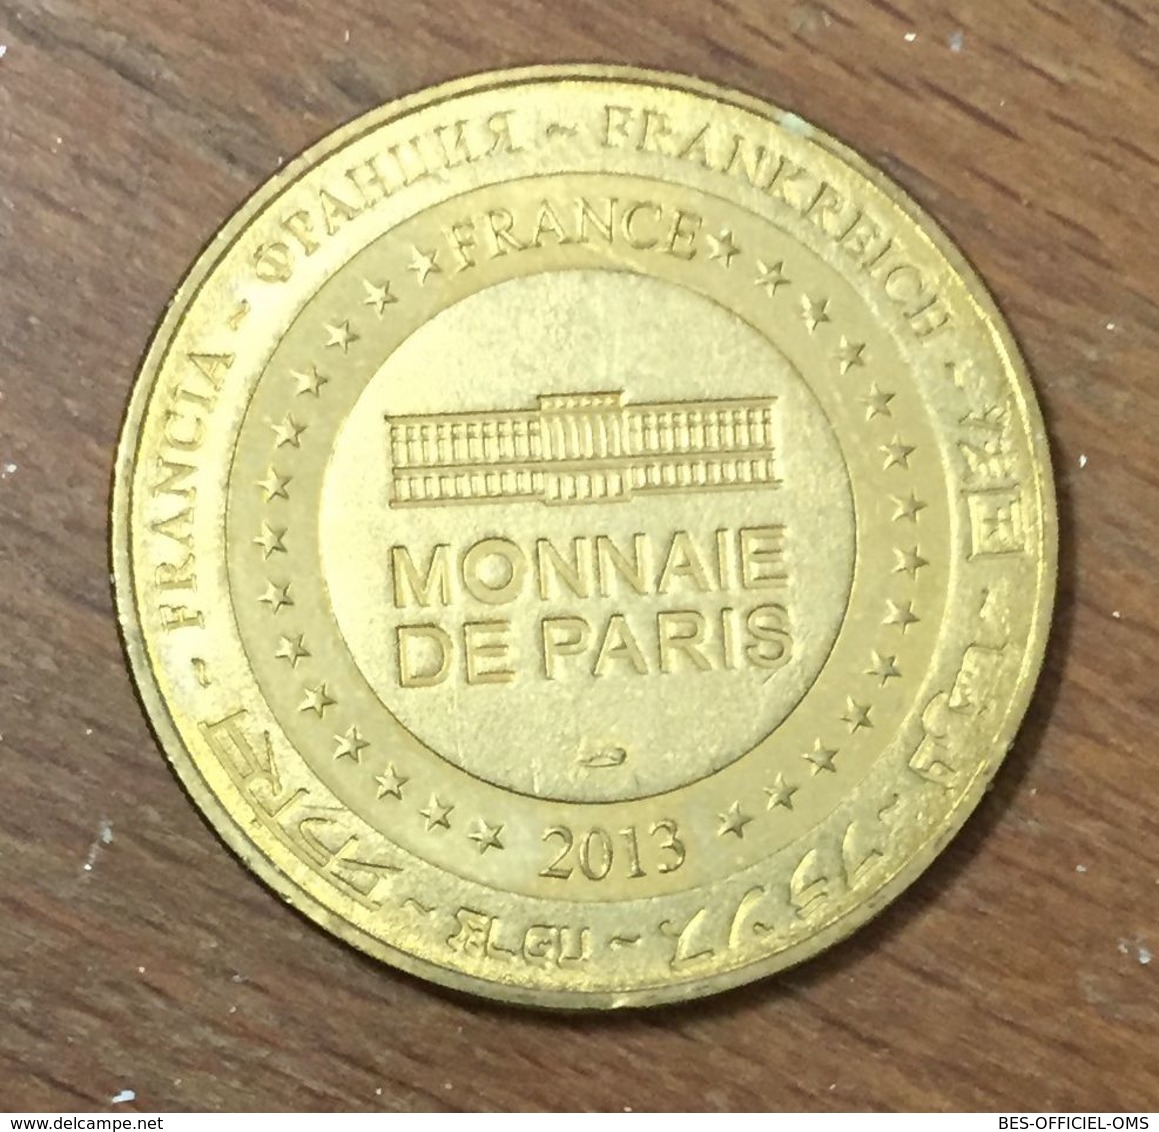 86 FUTUROSCOPE IMAGIC BERTRAN LOTTH MDP 2013 MÉDAILLE MONNAIE DE PARIS JETON TOURISTIQUE MEDALS COINS TOKENS - 2013